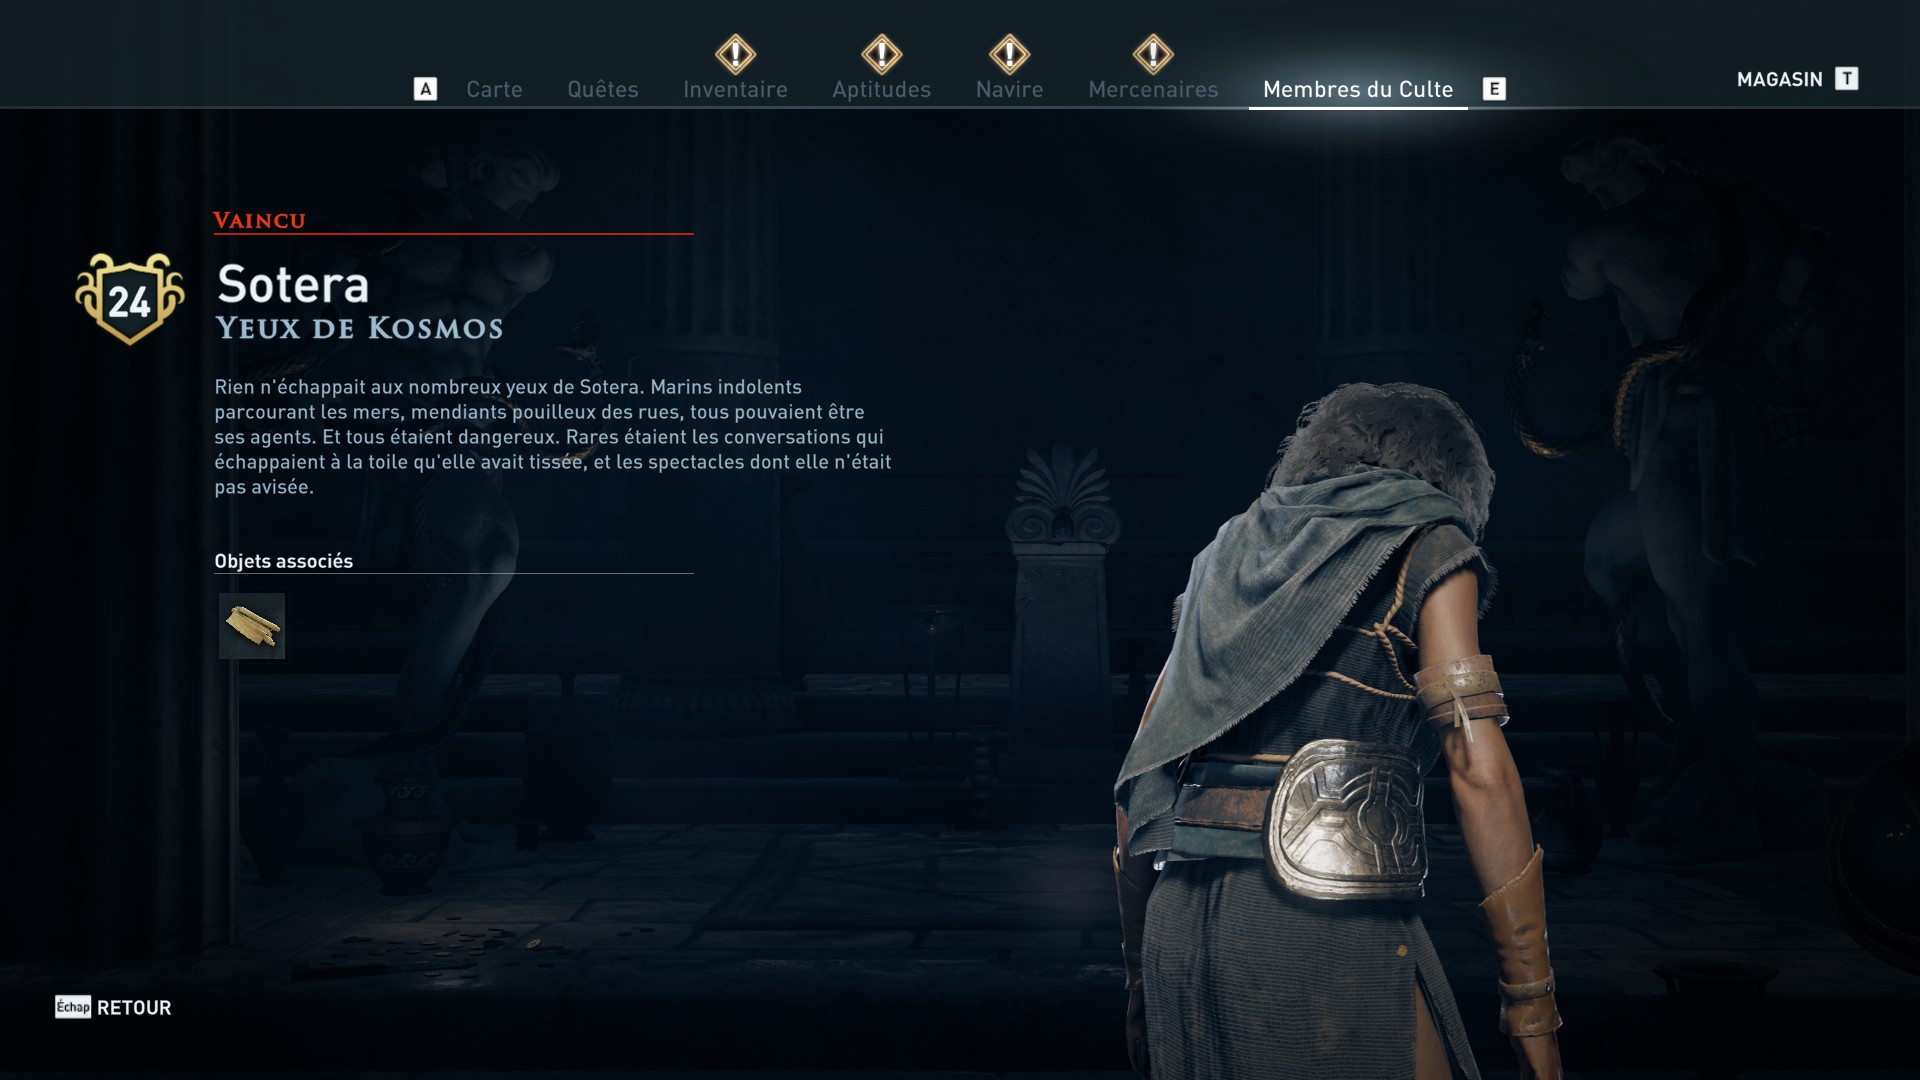 Assassin's Creed Odyssey trouver et tuer les adeptes du culte du Kosmos, ps4, xbox one, pc, ubisoft, jeu vidéo, Yeux de Kosmos, sotera